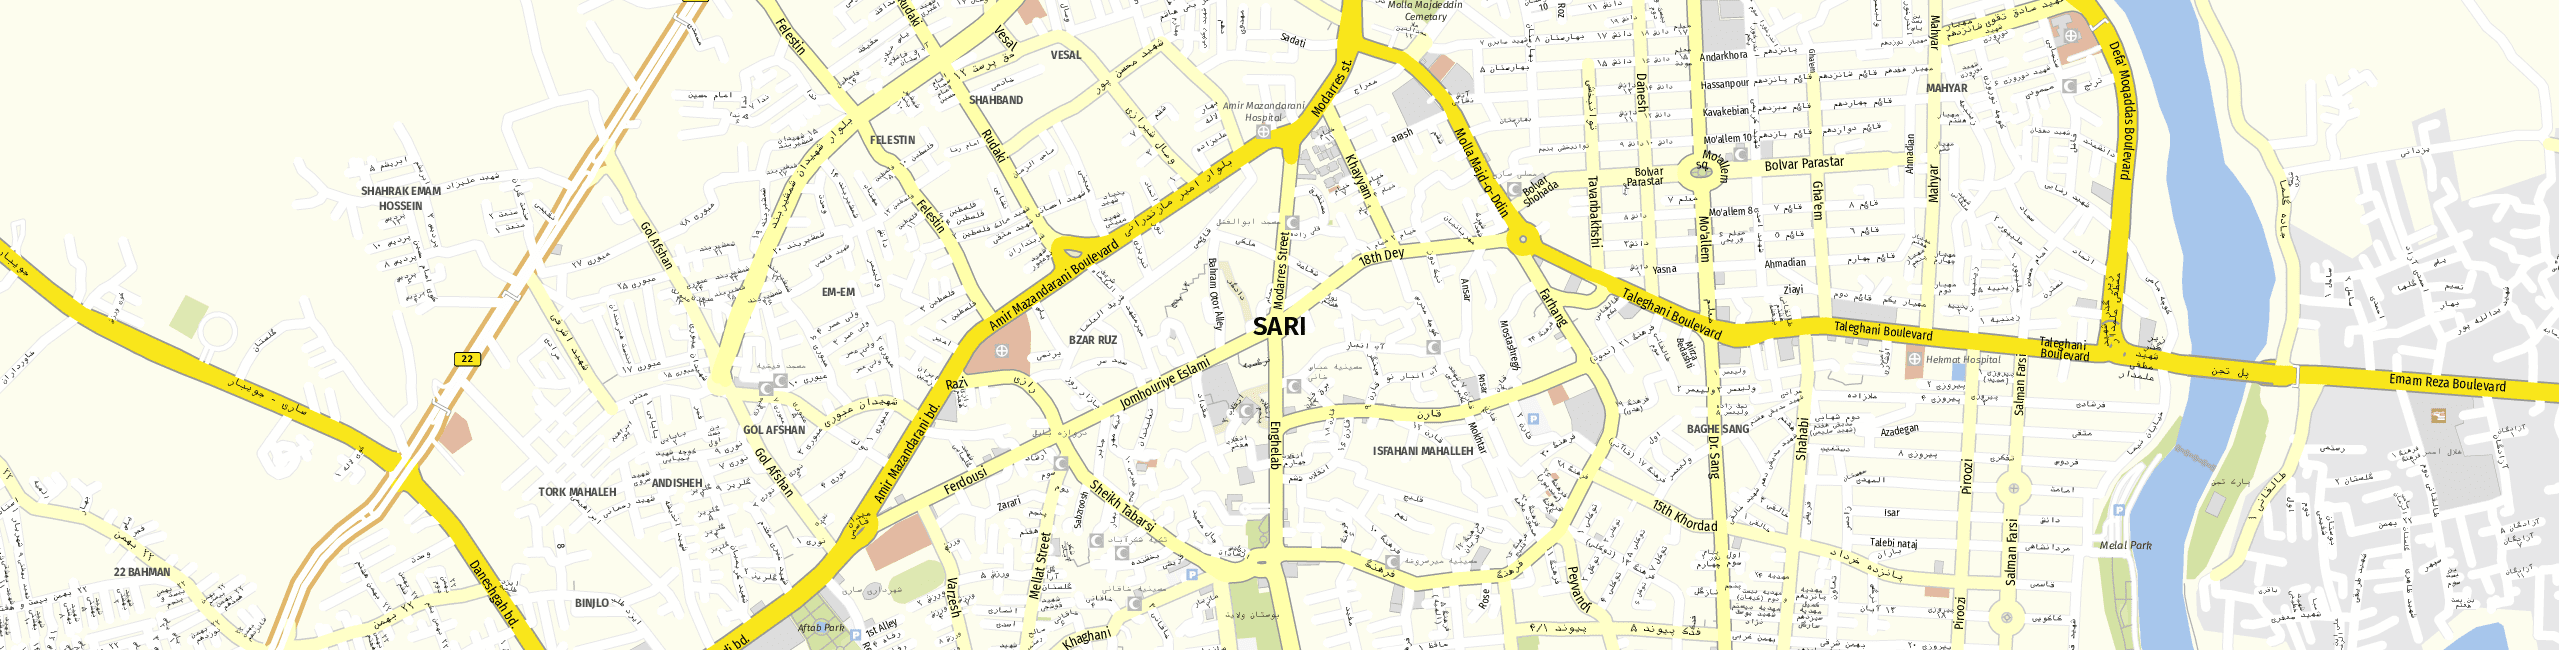 Stadtplan Sari zum Downloaden.